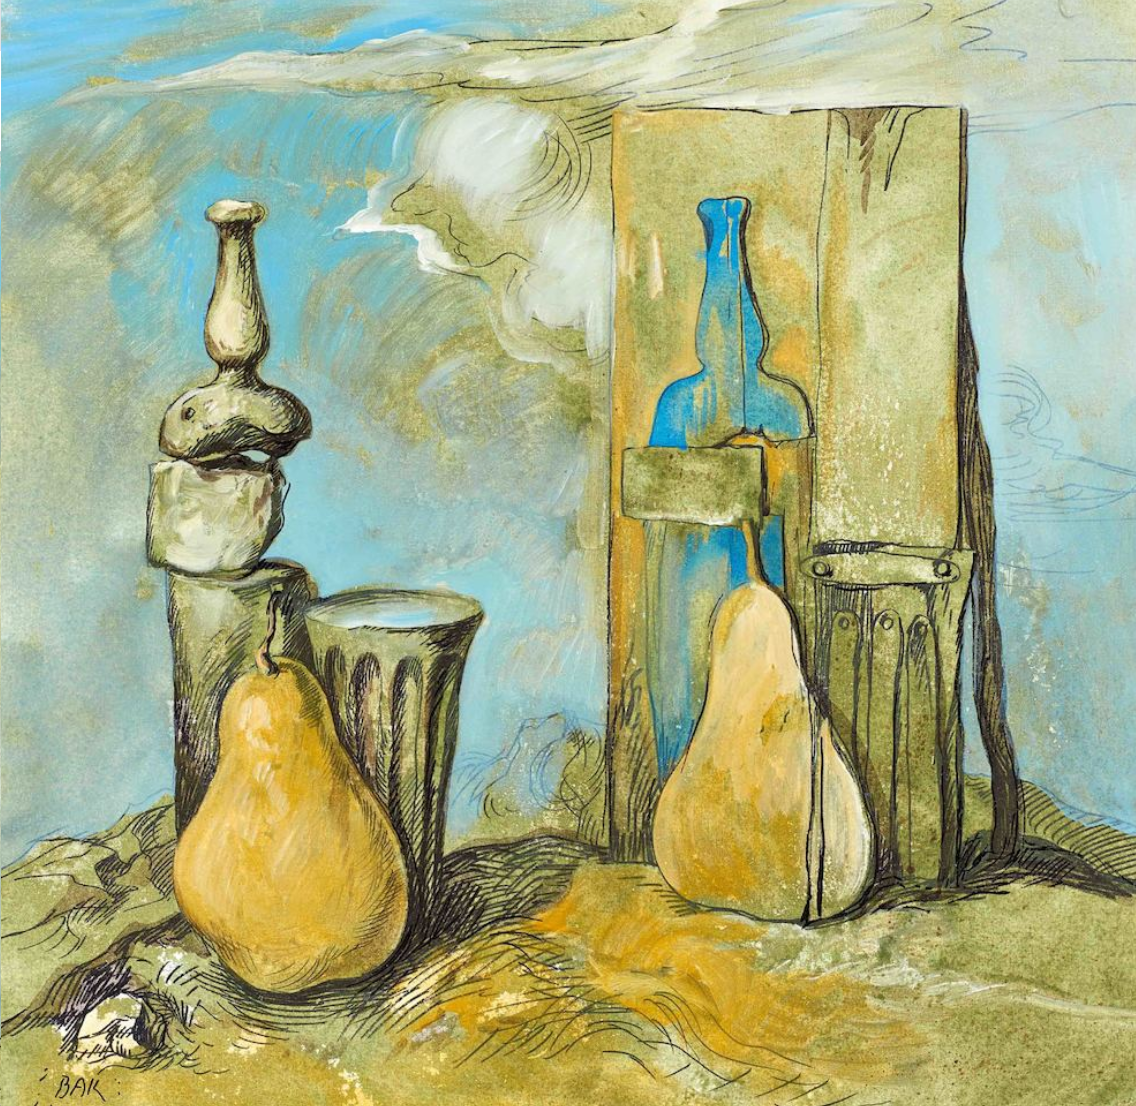 Samuel Bak | Still Life With Pears, 1979-1981 | Oil on canvas, 60x60